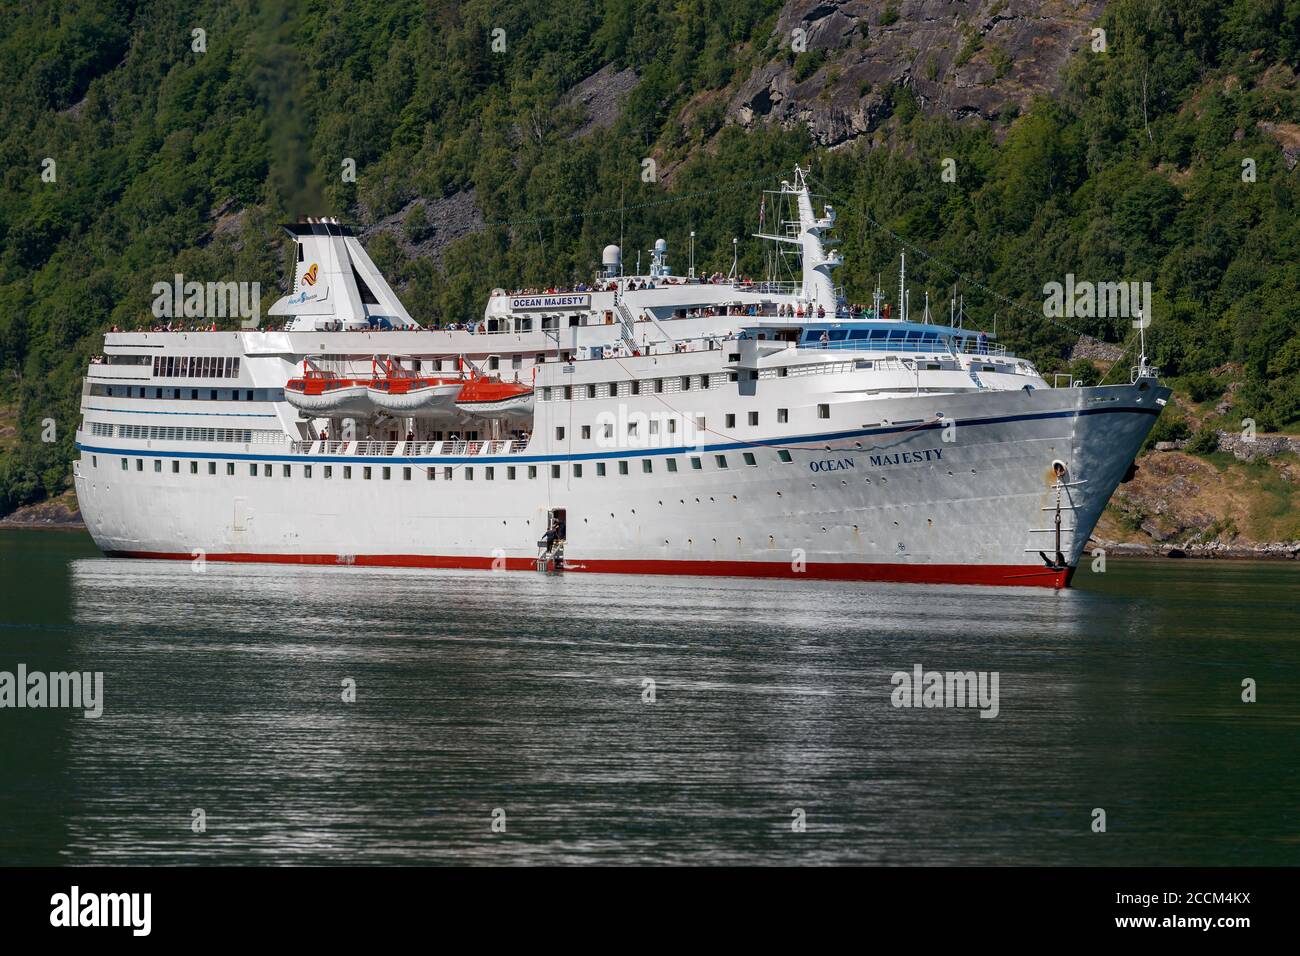 GEIRANGER, NORVÈGE - 2016 JUIN 14. Bateau de croisière Ocean Majesty prêt à abaisser l'ancre à l'intérieur du fjord norvégien. Banque D'Images